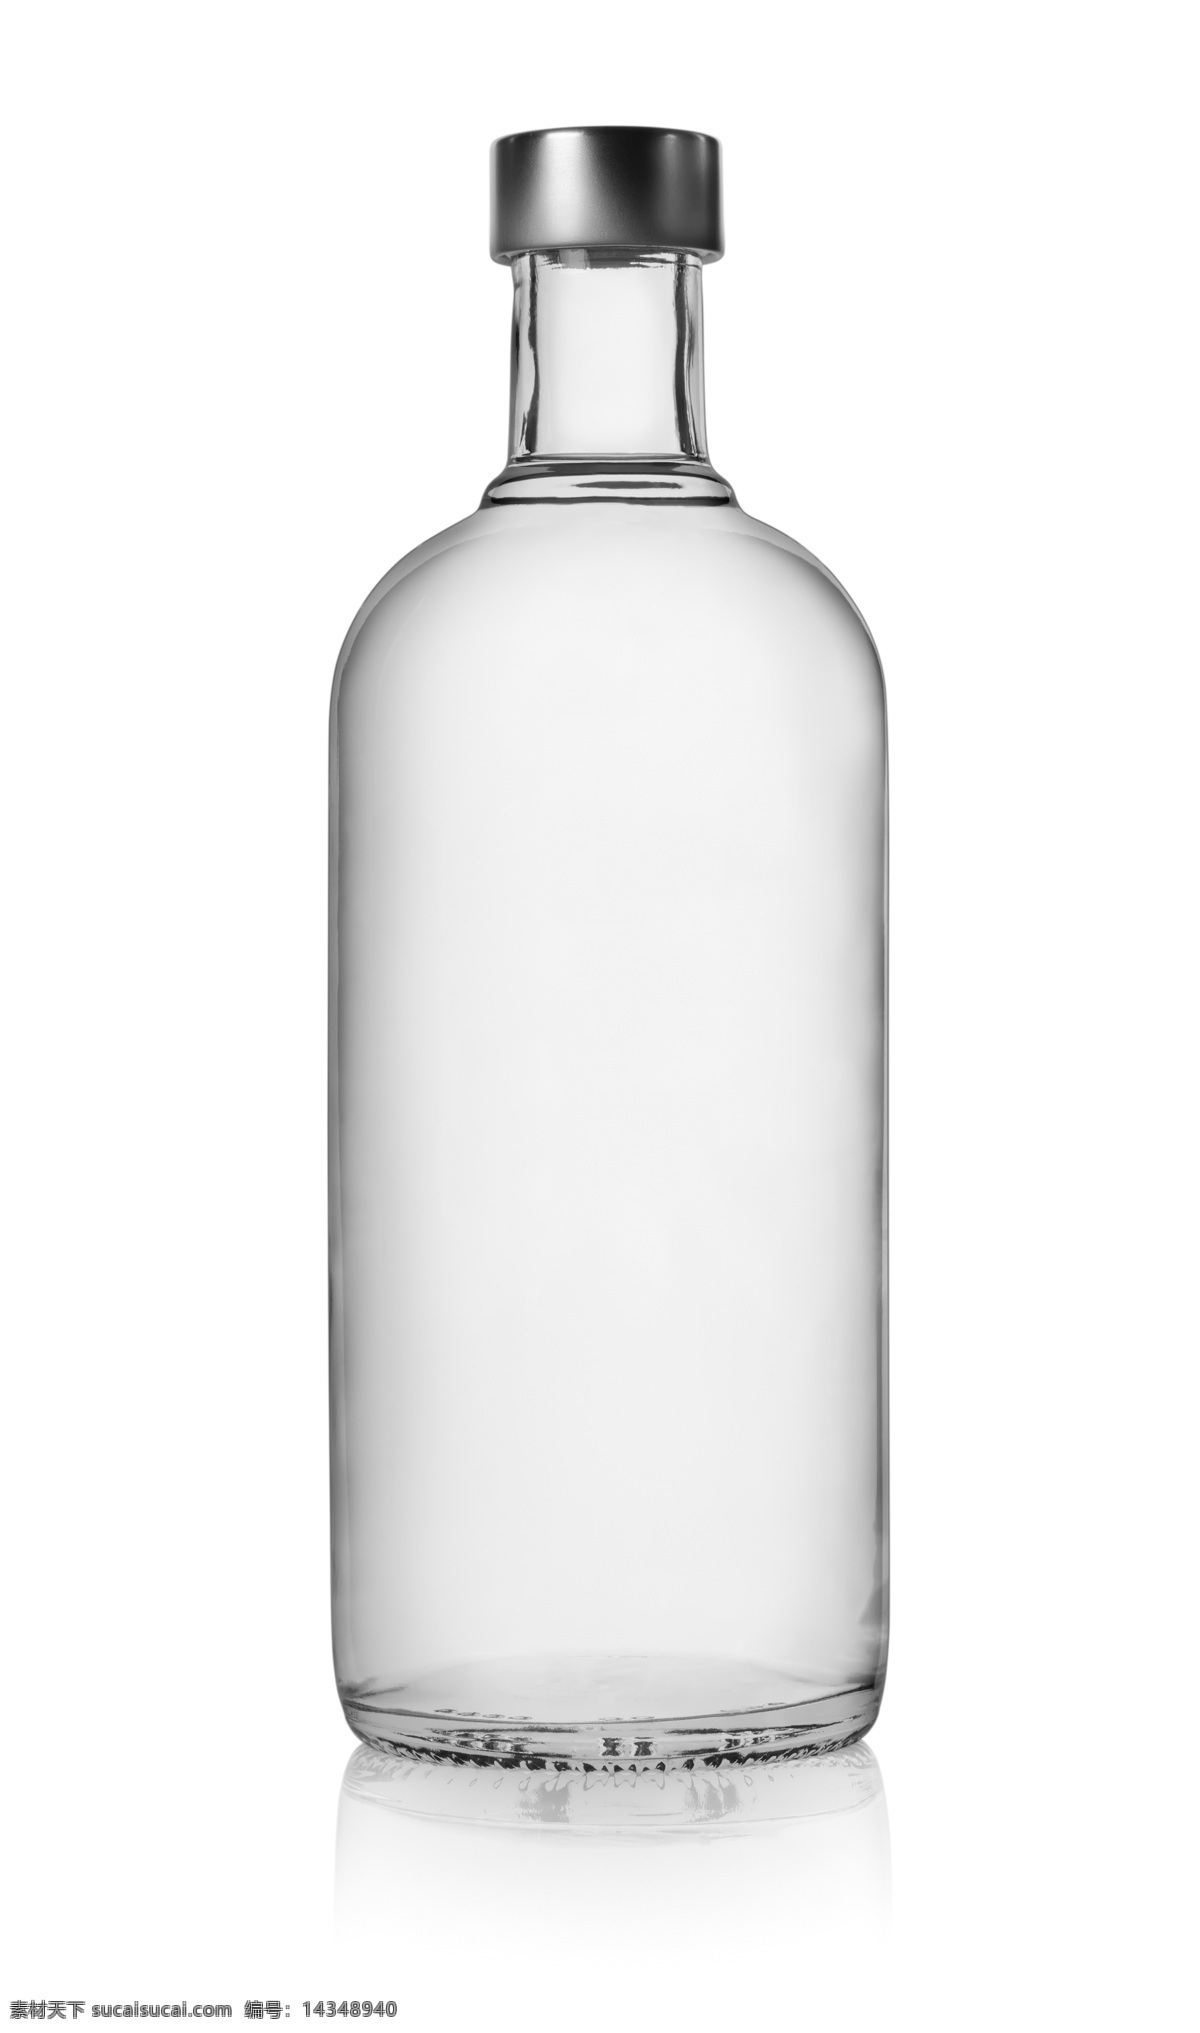 伏特加 伏特加酒瓶 玻璃瓶 伏特加酒 透明 空的 饮料 白色 液体 酒精 瓶子 酒瓶 饮料酒水 餐饮美食